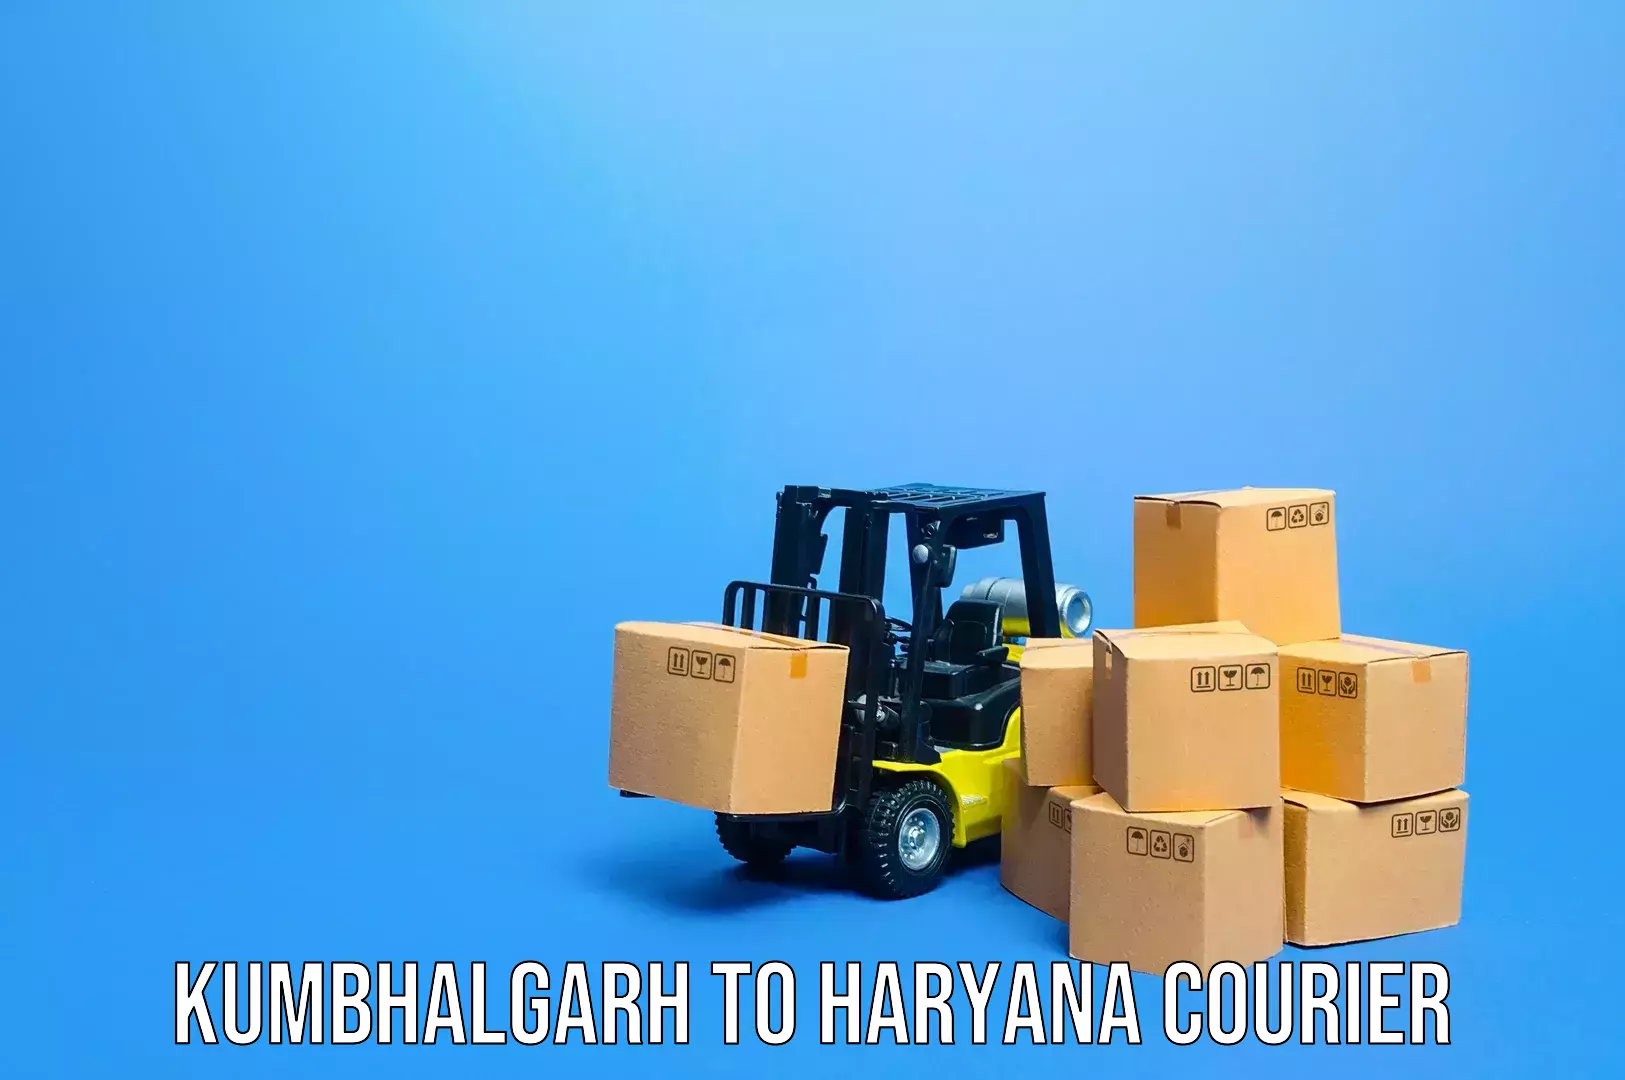 Baggage courier service Kumbhalgarh to Kurukshetra University